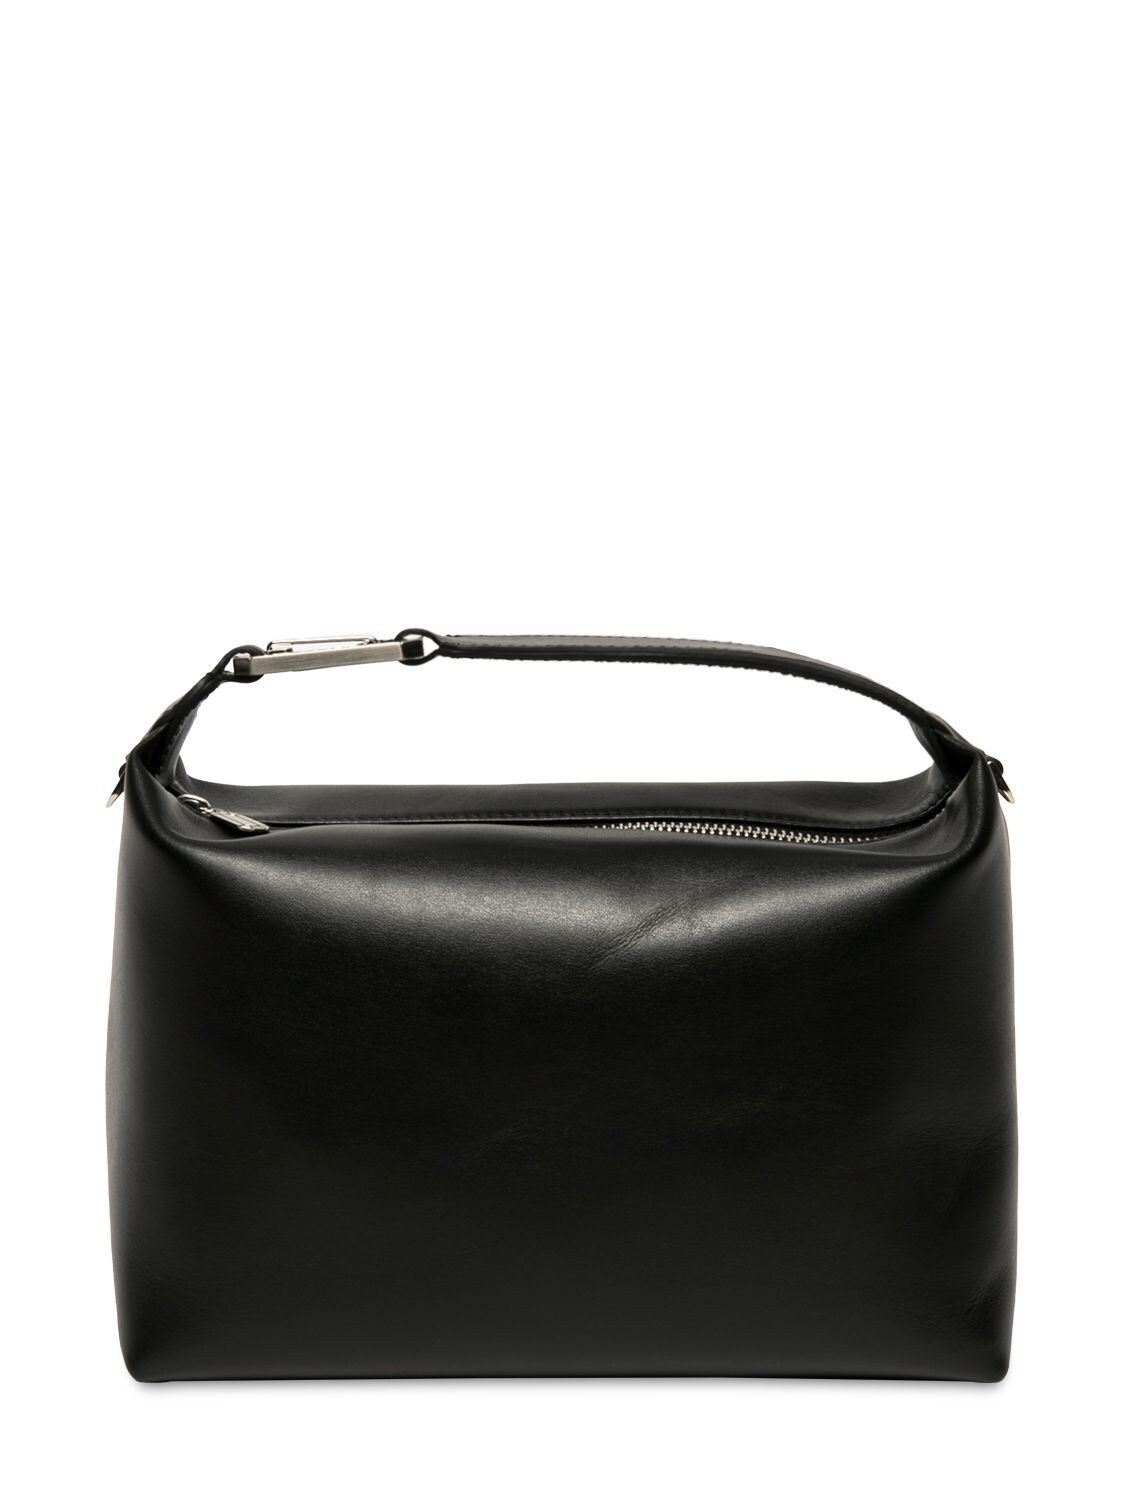 Eéra Full Moonbag Leather Top Handle Bag In Black